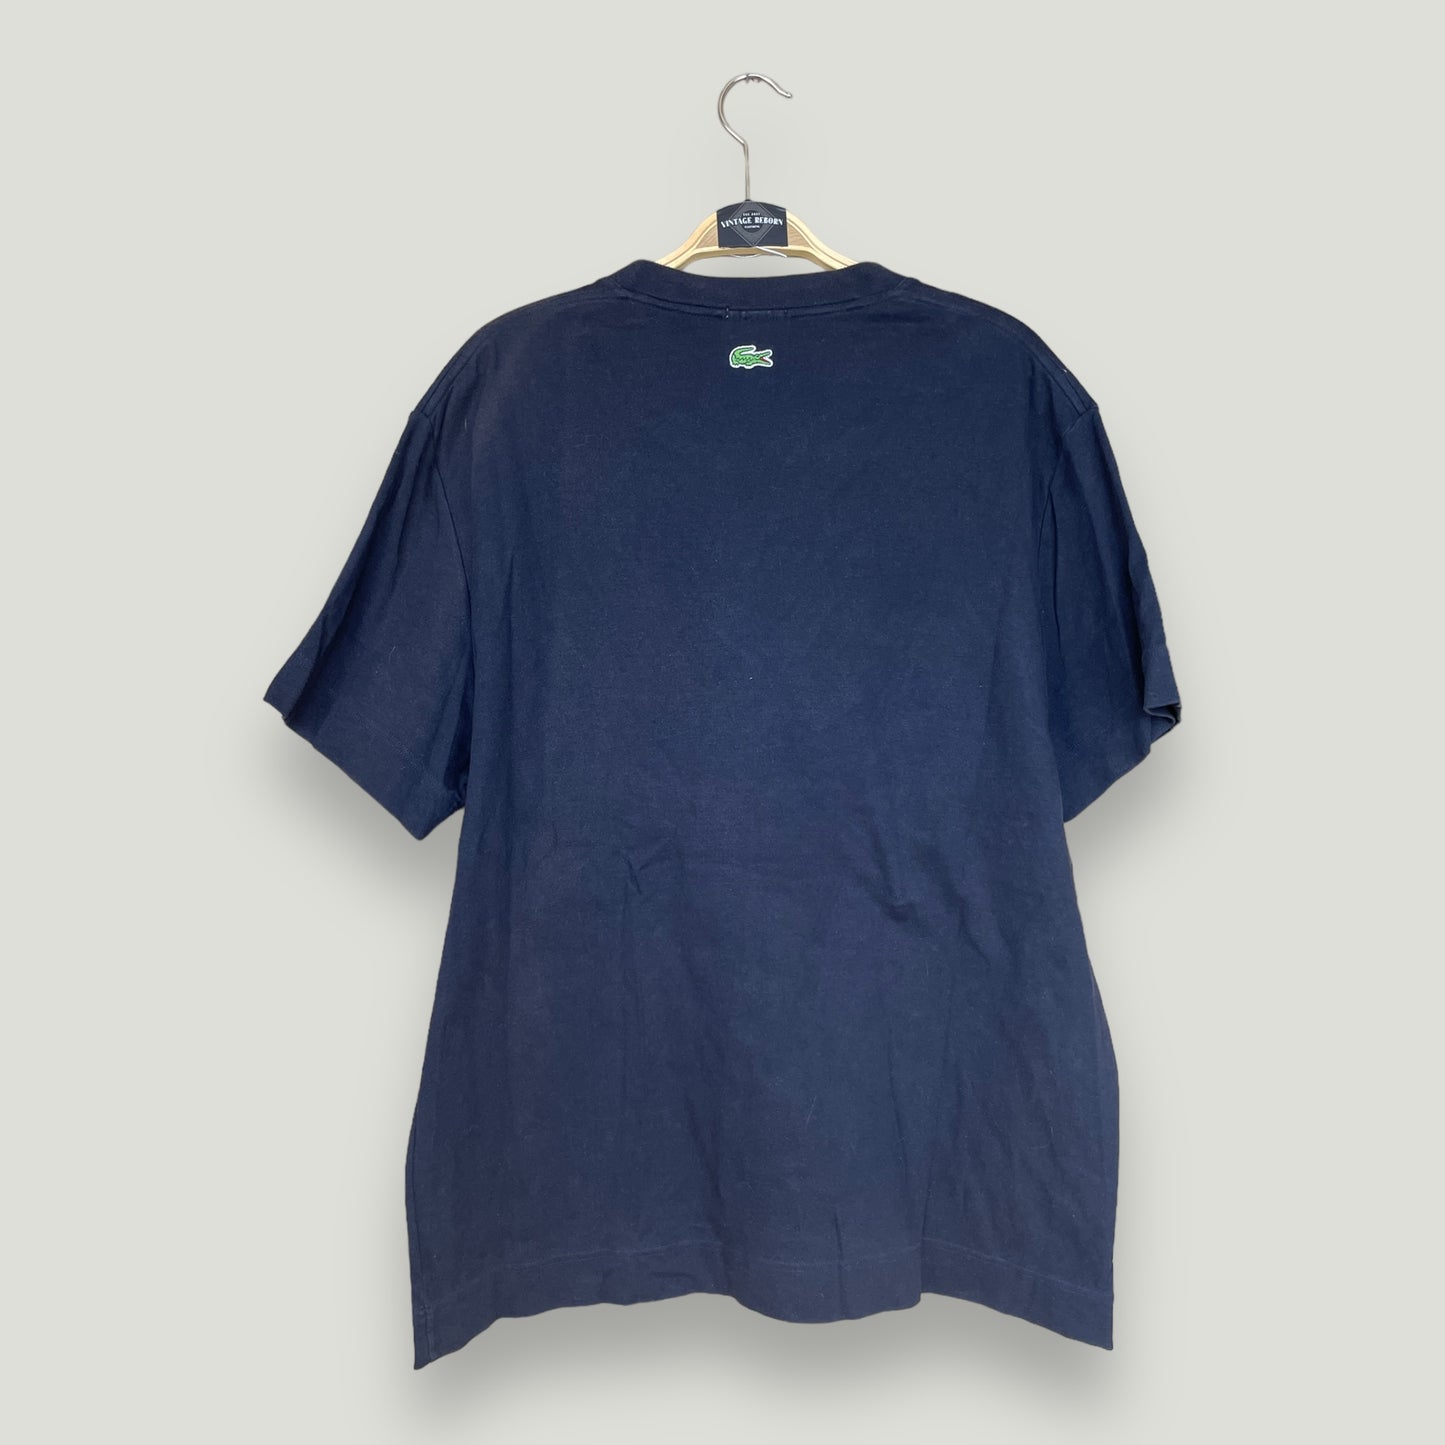 Lacoste Tshirt - Vintage Reborn